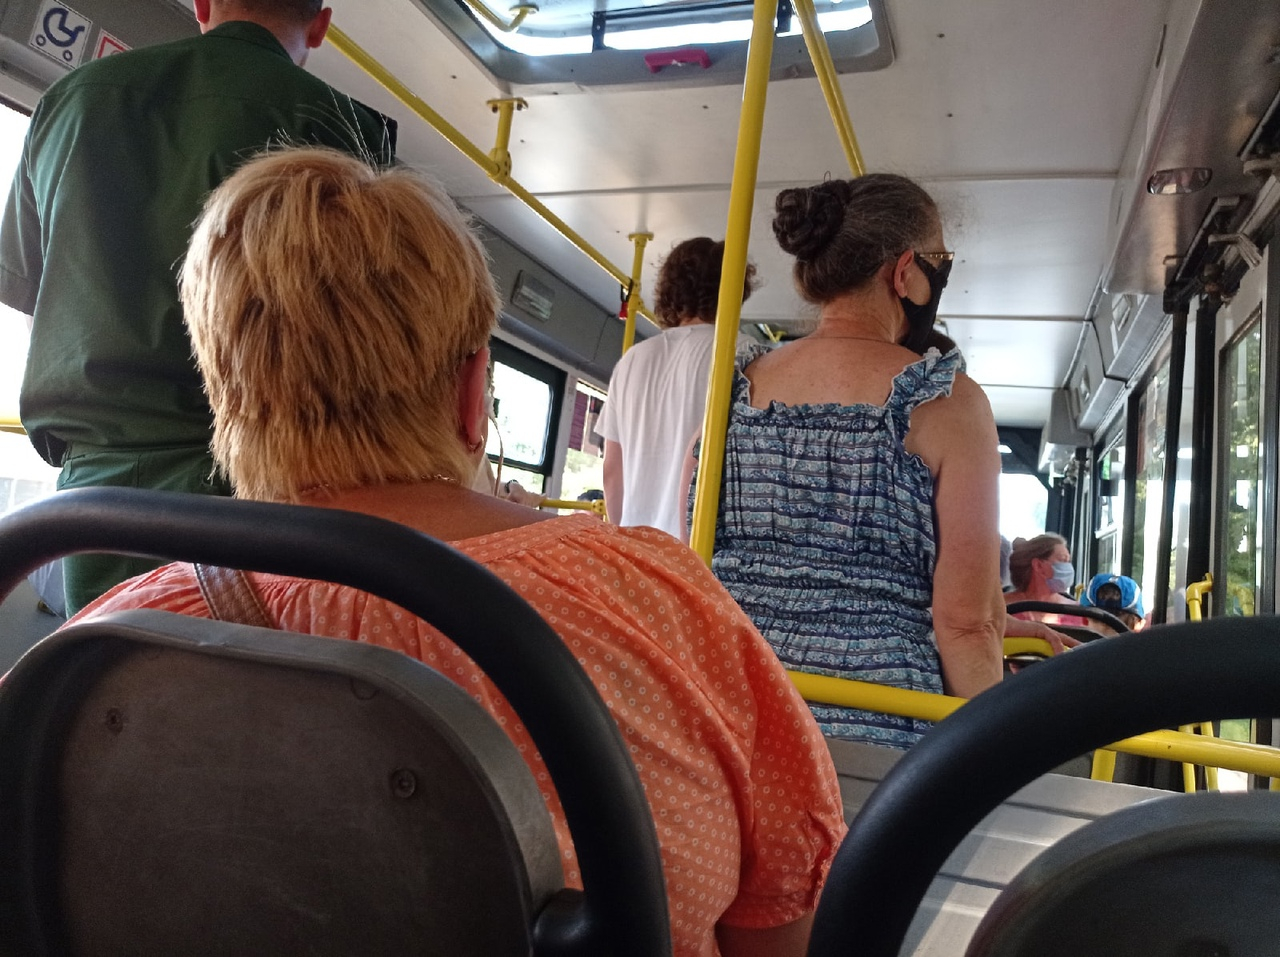 "Заплатил за одну поездку три раза": ярославцы жалуются на прожорливые терминалы в автобусах